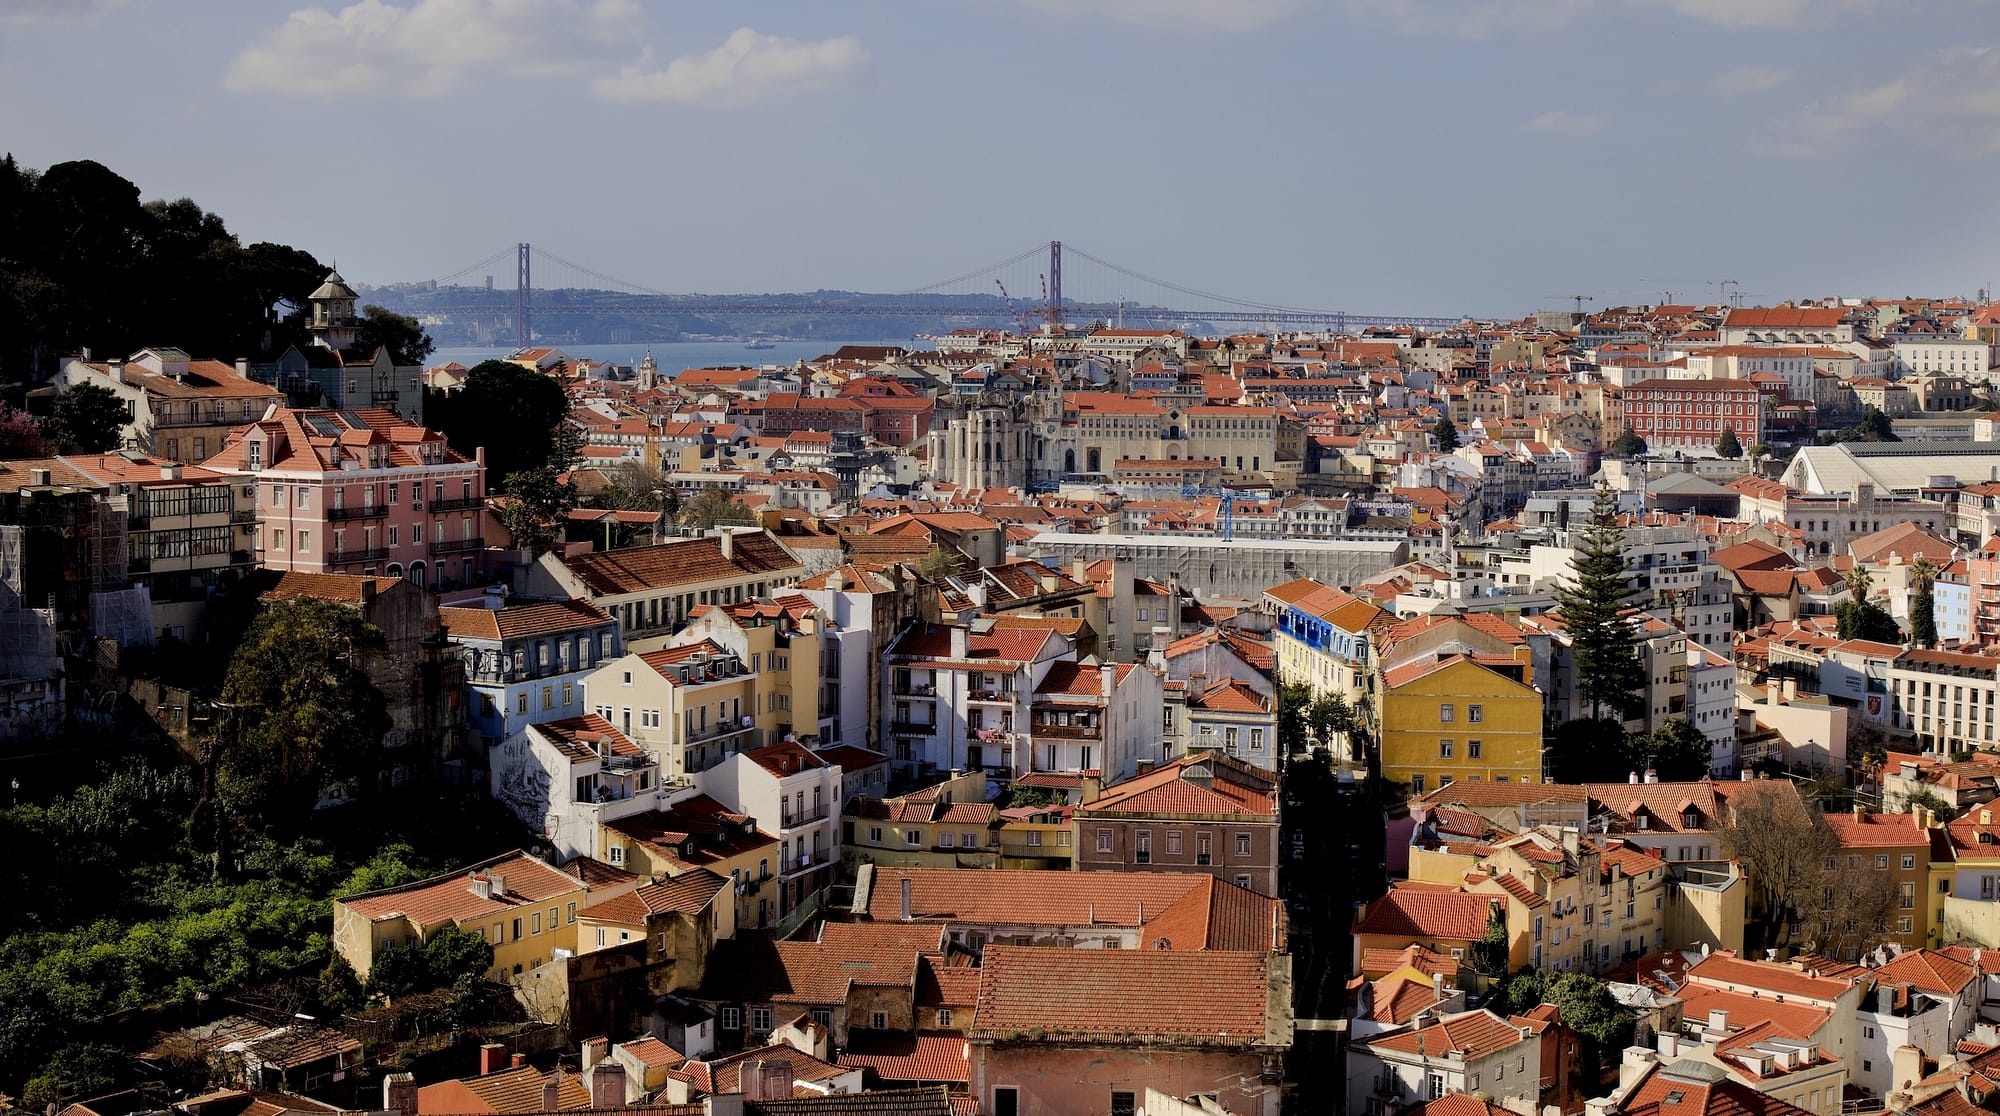 Kota terbaik untuk gaya hidup adalah Lisbon, Portugal